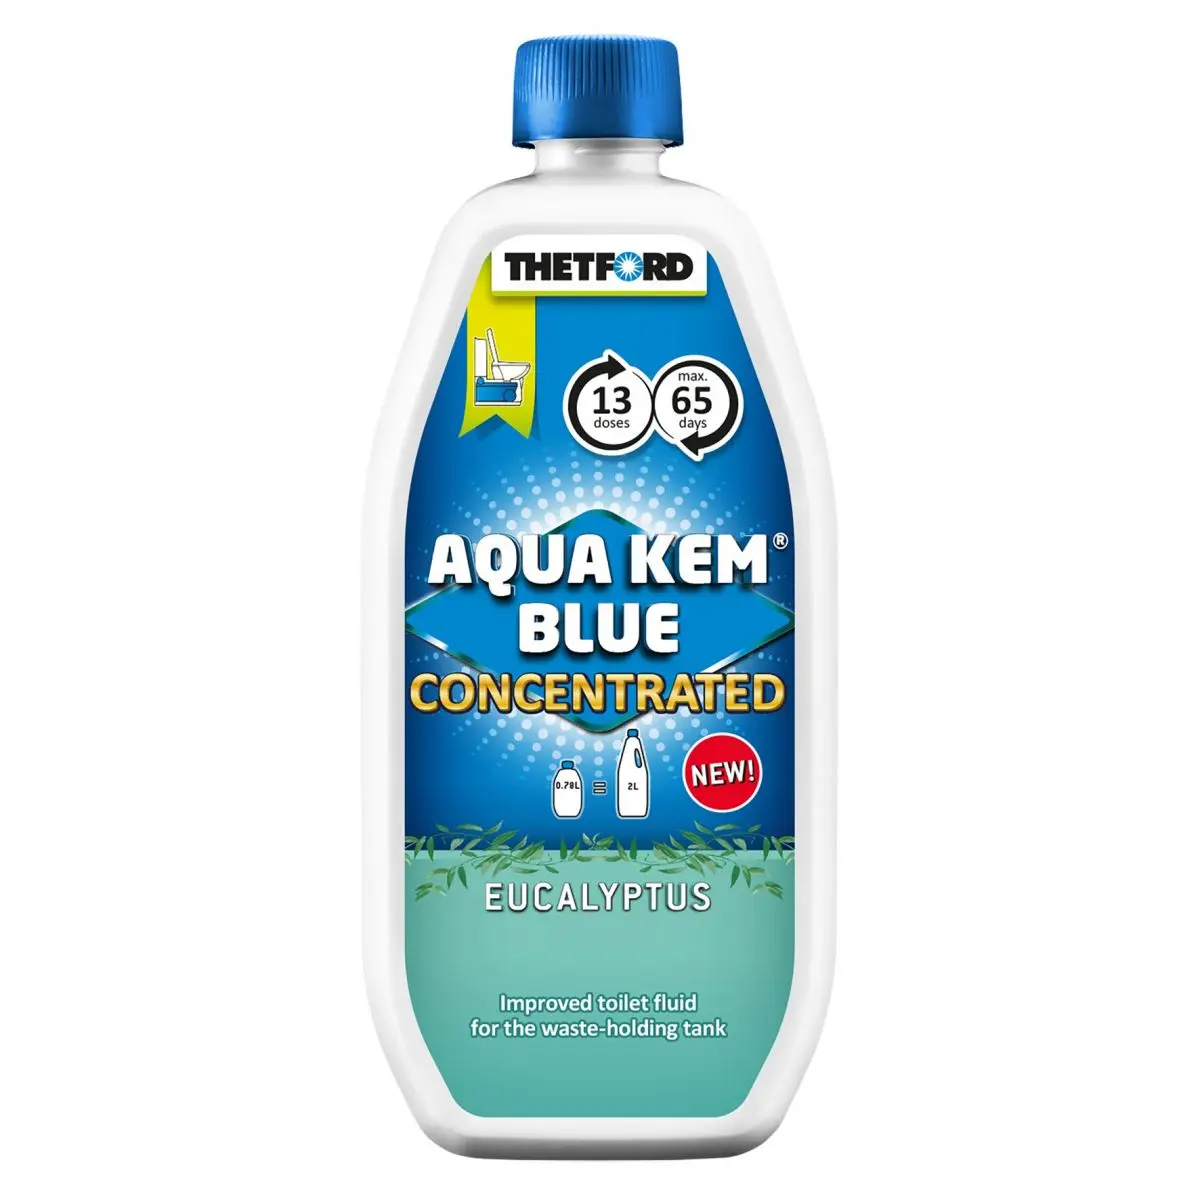 Concentrat Aqua Kem Blue - Eucalipt, 780 ml